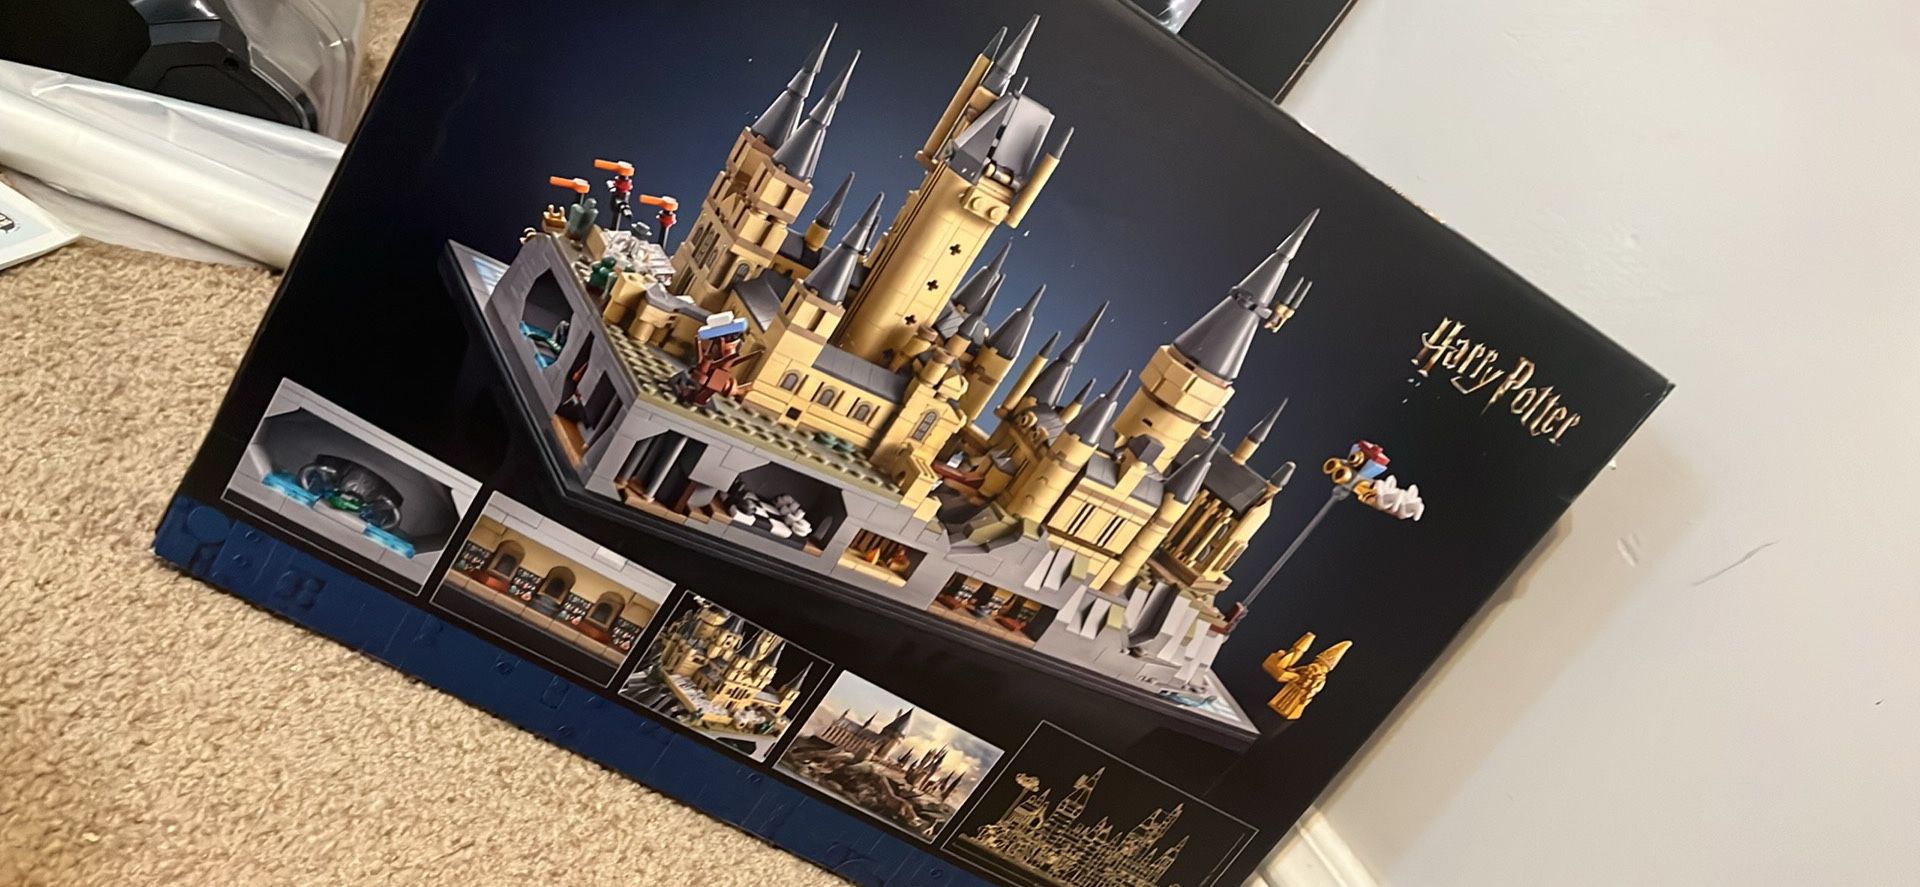 Hogwarts Castle Lego Set